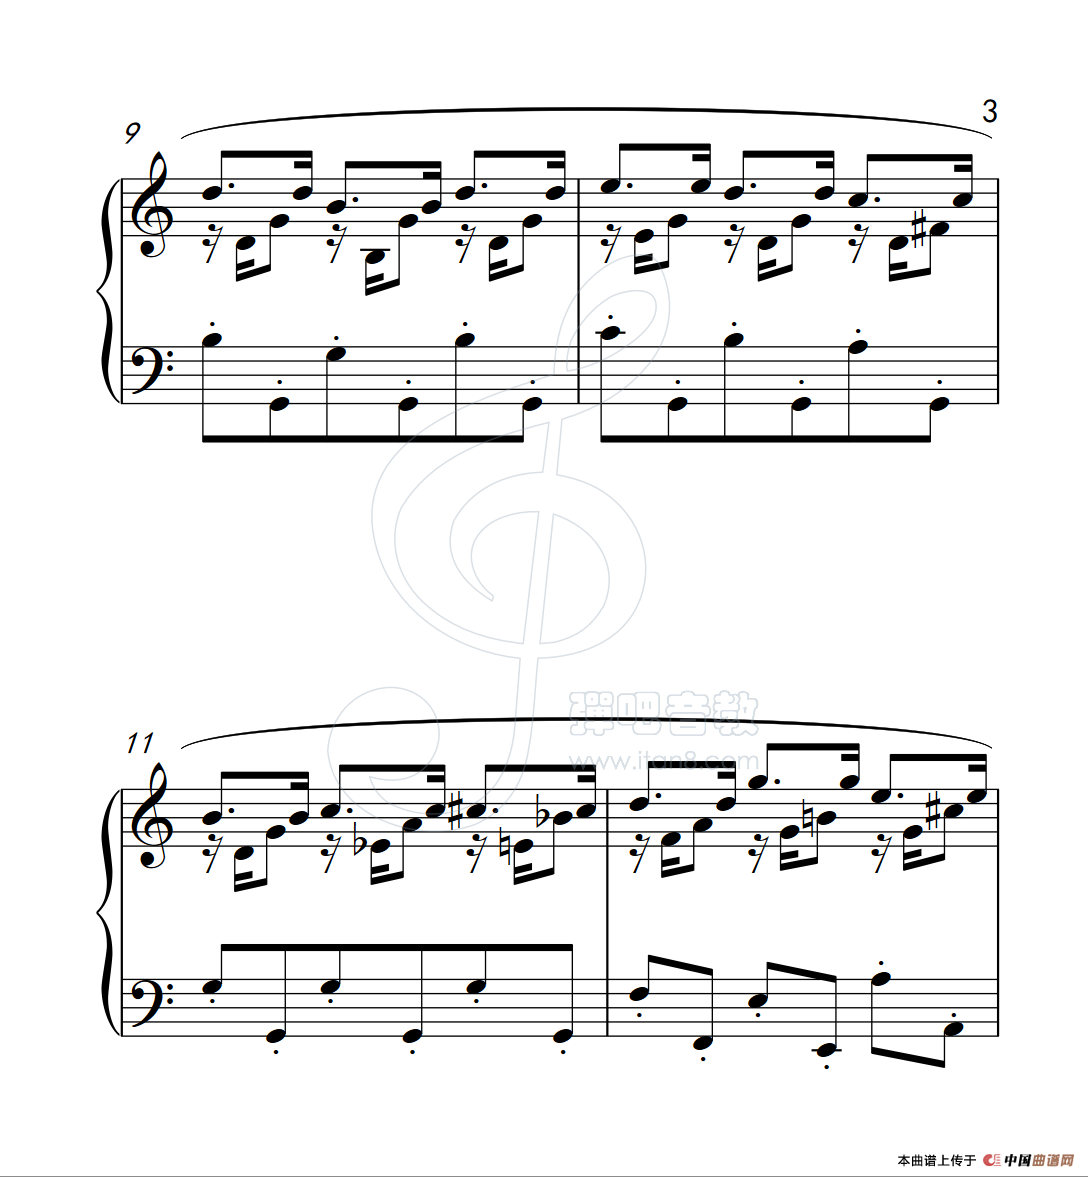 《练习曲 25》钢琴曲谱图分享